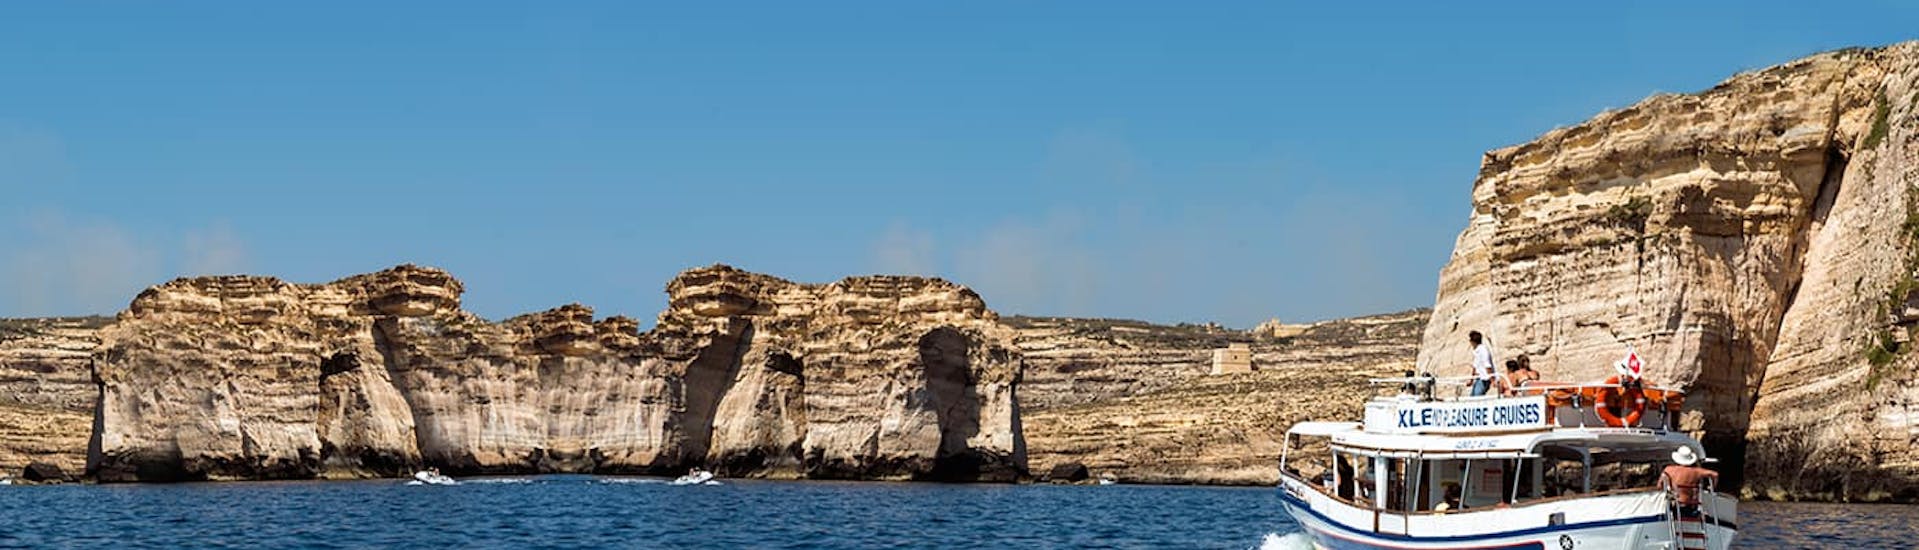 Boot von Xlendi Pleasure Cruise während der Bootstour von Gozo rund um Gozo und Comino mit Schwimmstopp in der Blauen Lagune.